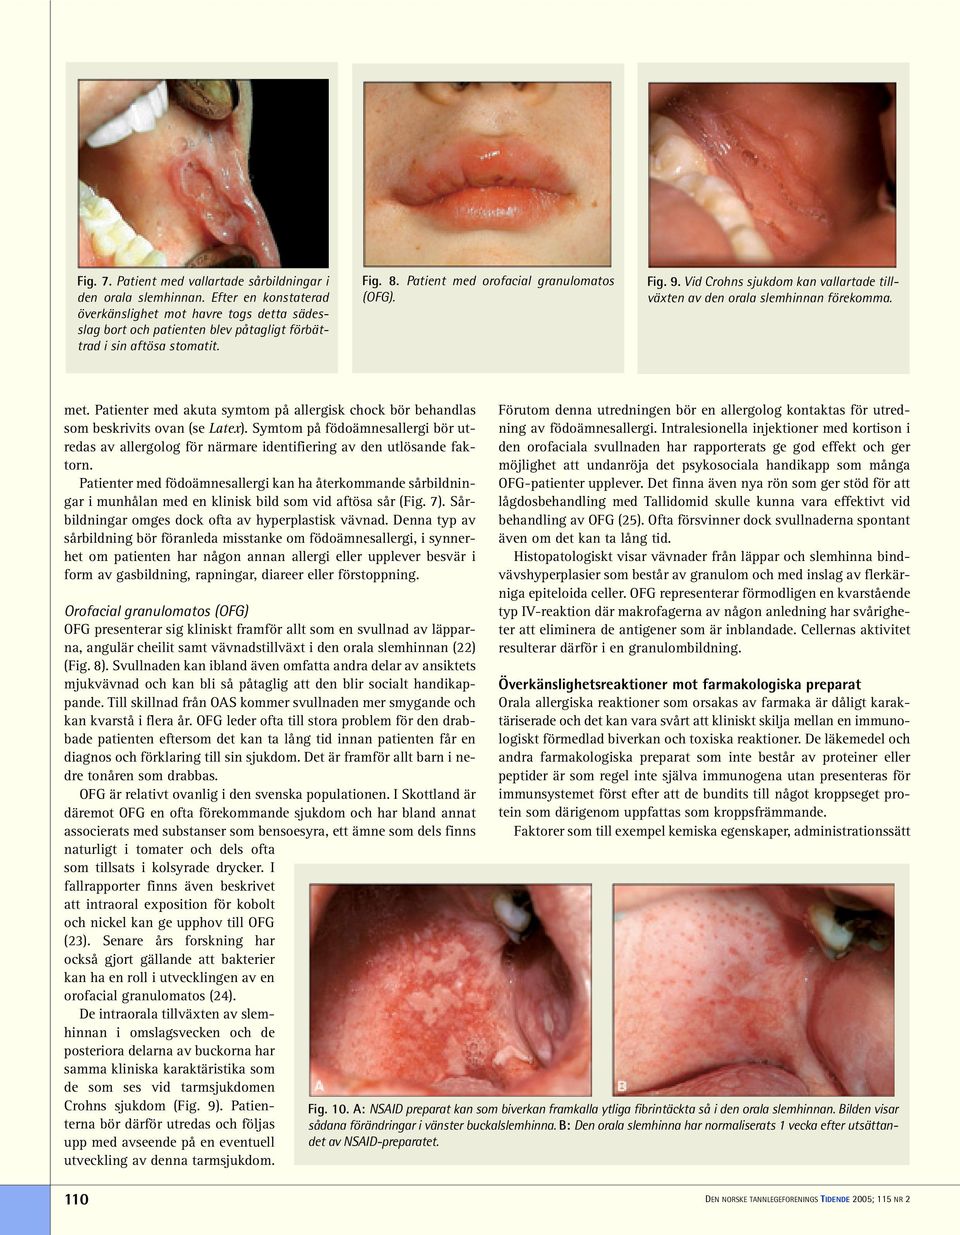 Vid Crohns sjukdom kan vallartade tillväxten av den orala slemhinnan förekomma. met. Patienter med akuta symtom på allergisk chock bör behandlas som beskrivits ovan (se Latex).